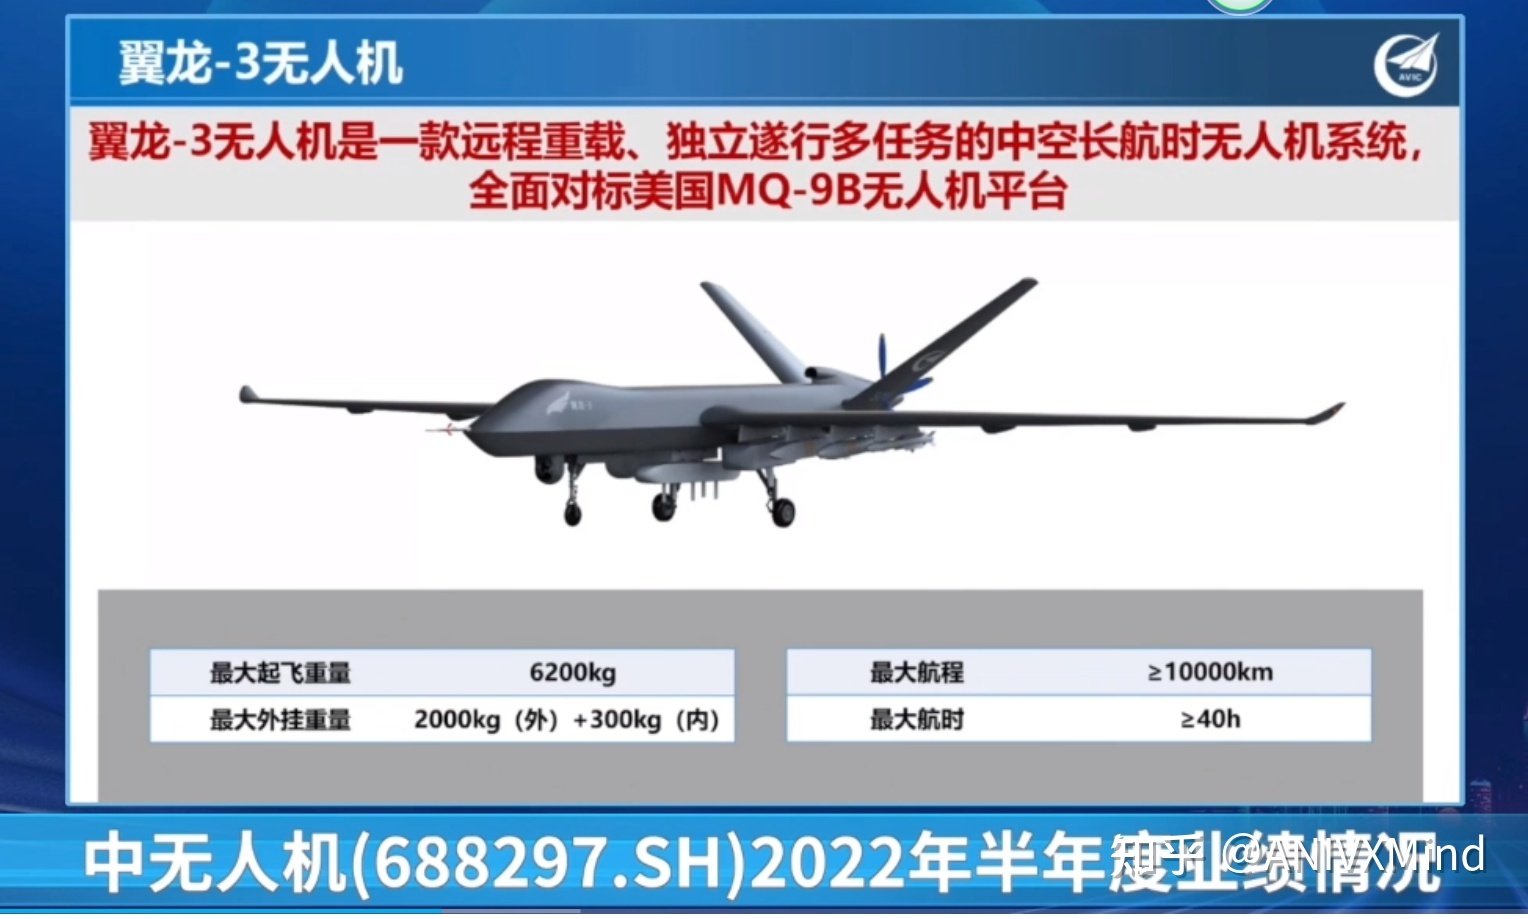 La Cina ha presentato il drone da ricognizione Wing Loong 3, un concorrente dell'MQ-9B SkyGuardian, con un raggio d'azione di 10.000 km e missili PL-10.-2